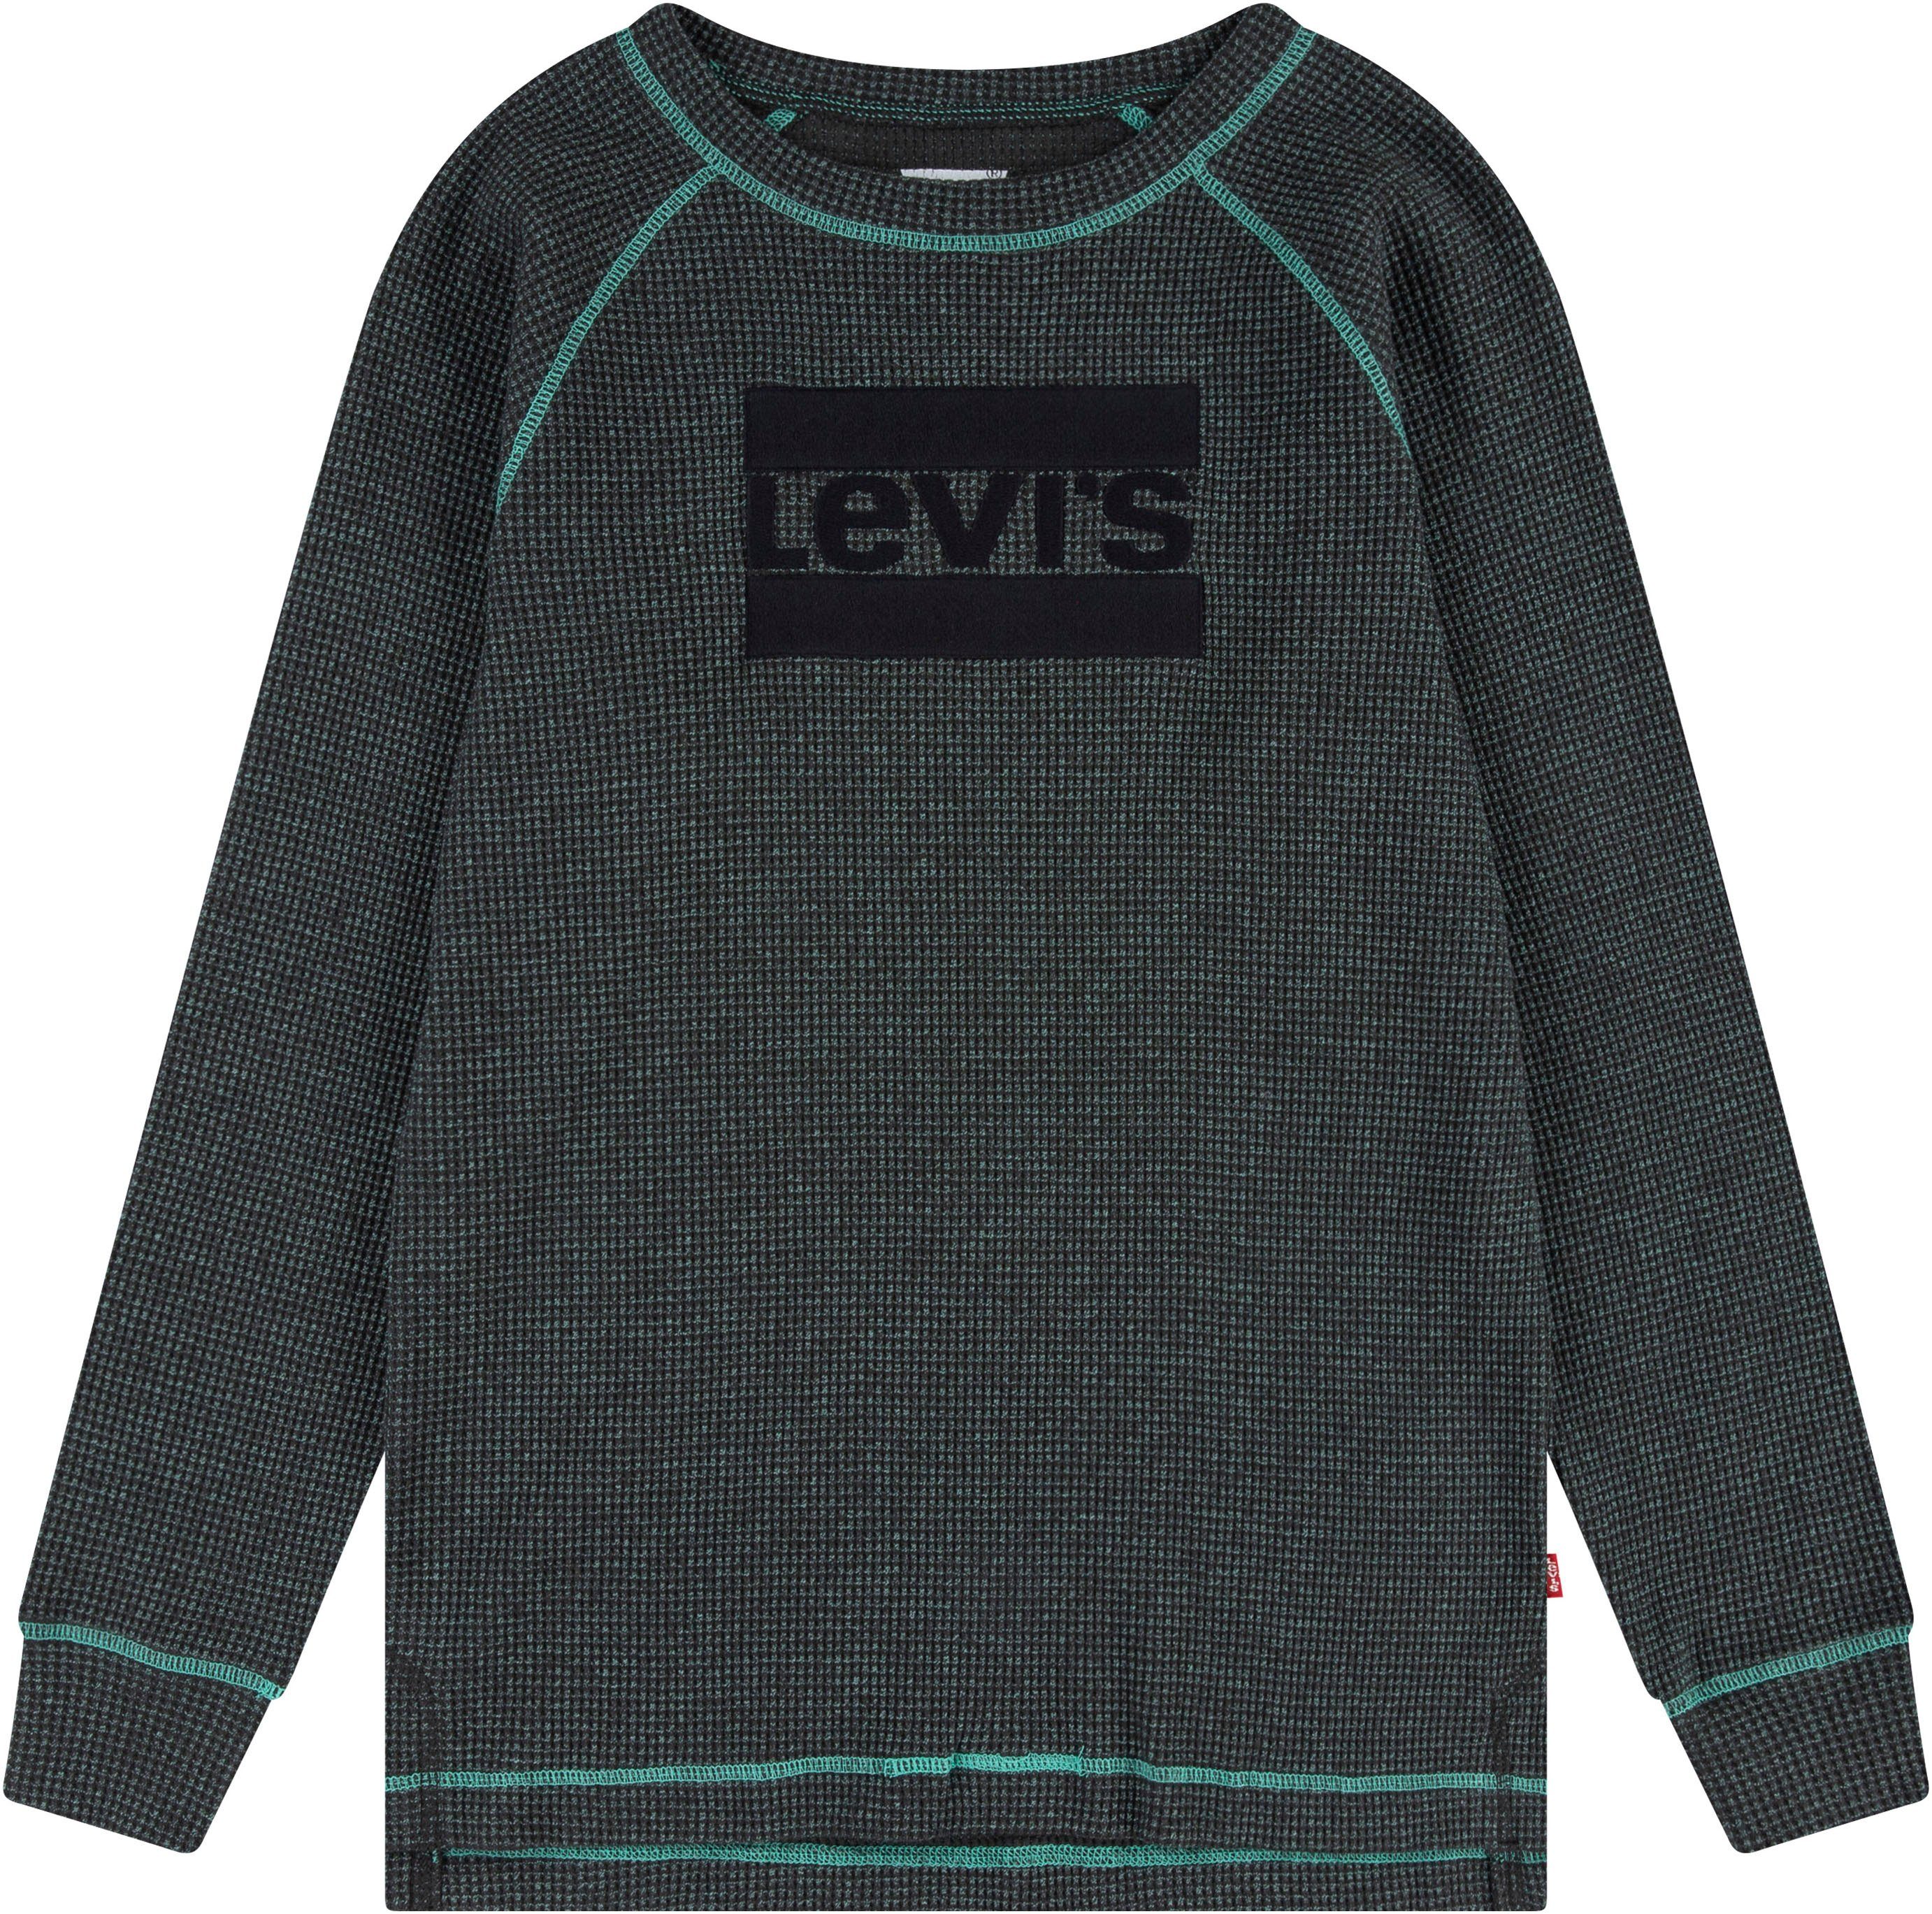 Levi's Kidswear Sweatshirt for boys